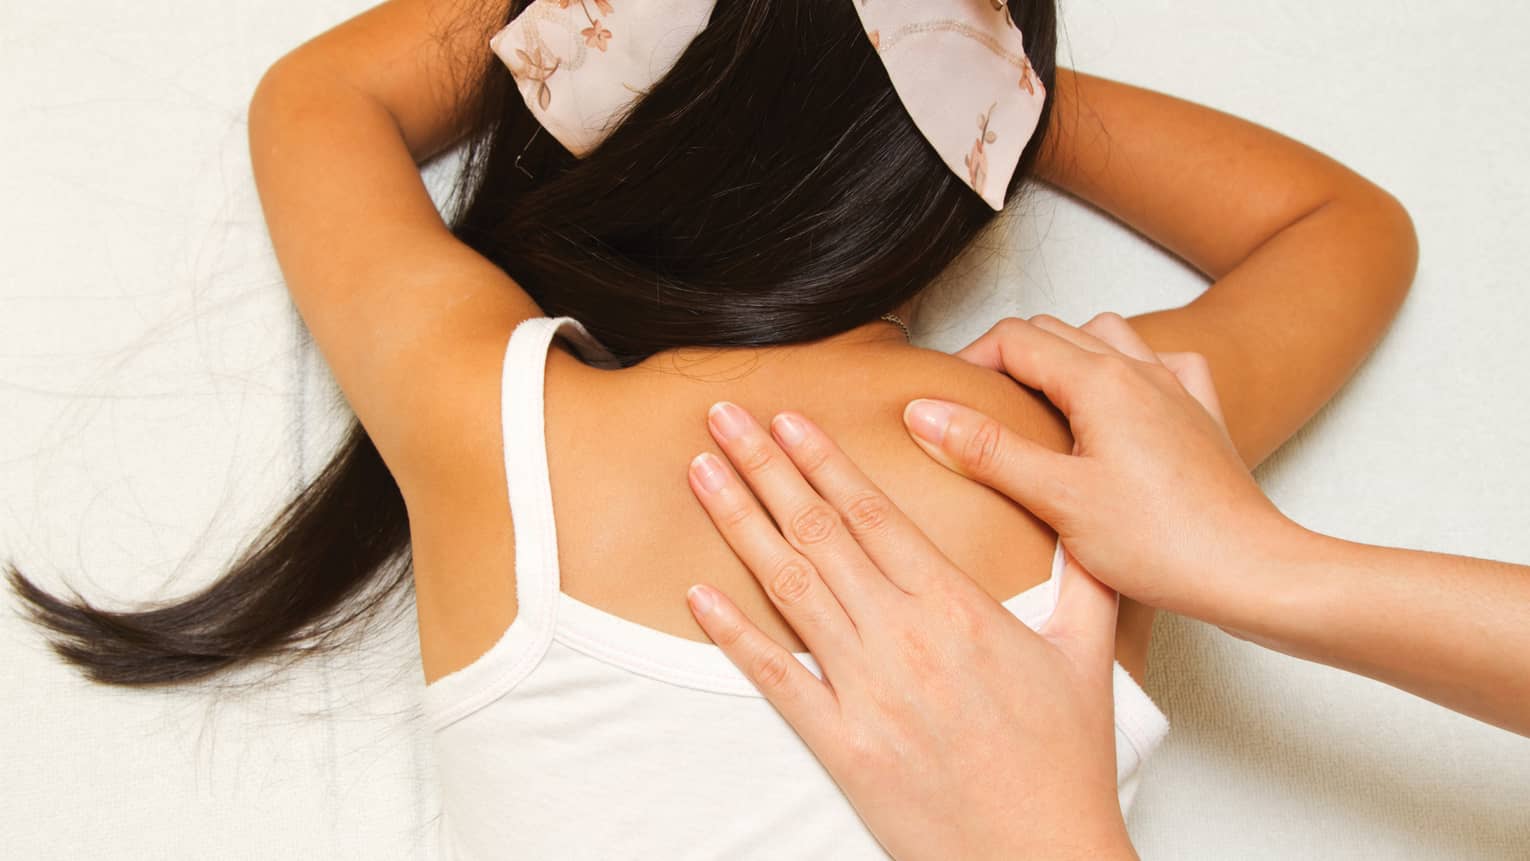 Masseuse hands massage girl's shoulders